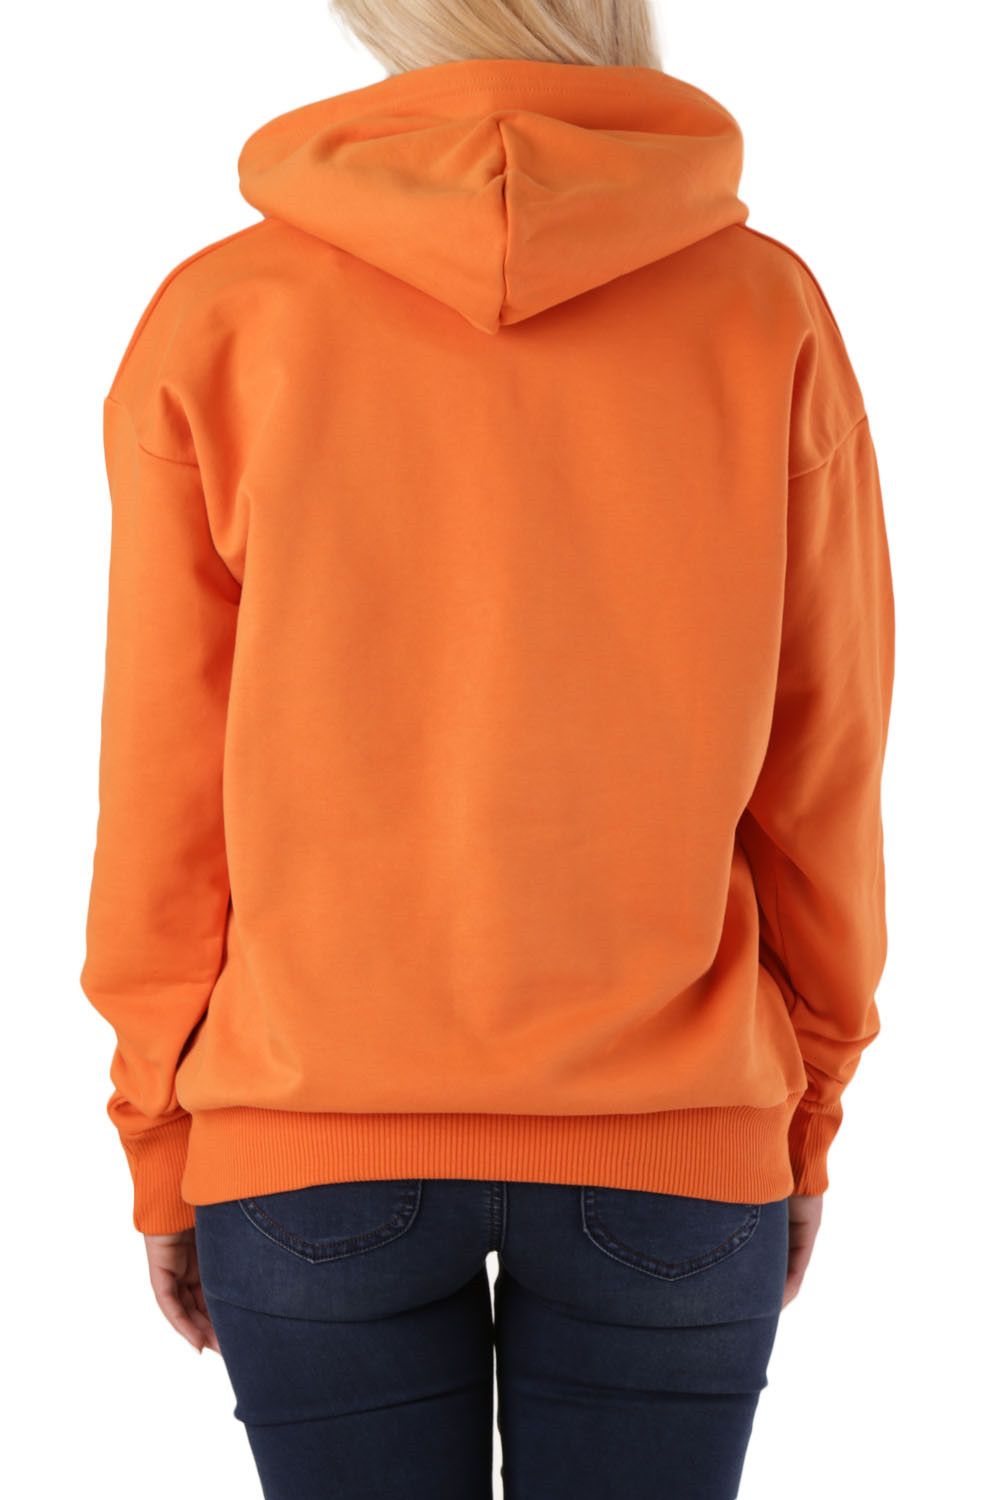 Brand: Diesel   Gender: Women   Type: Sweatshirts   Color: Orange   Pattern: Print   Sleeves: Long Sleeve   Collar: Hood   Fastening: Slip On   Season: All Seasons